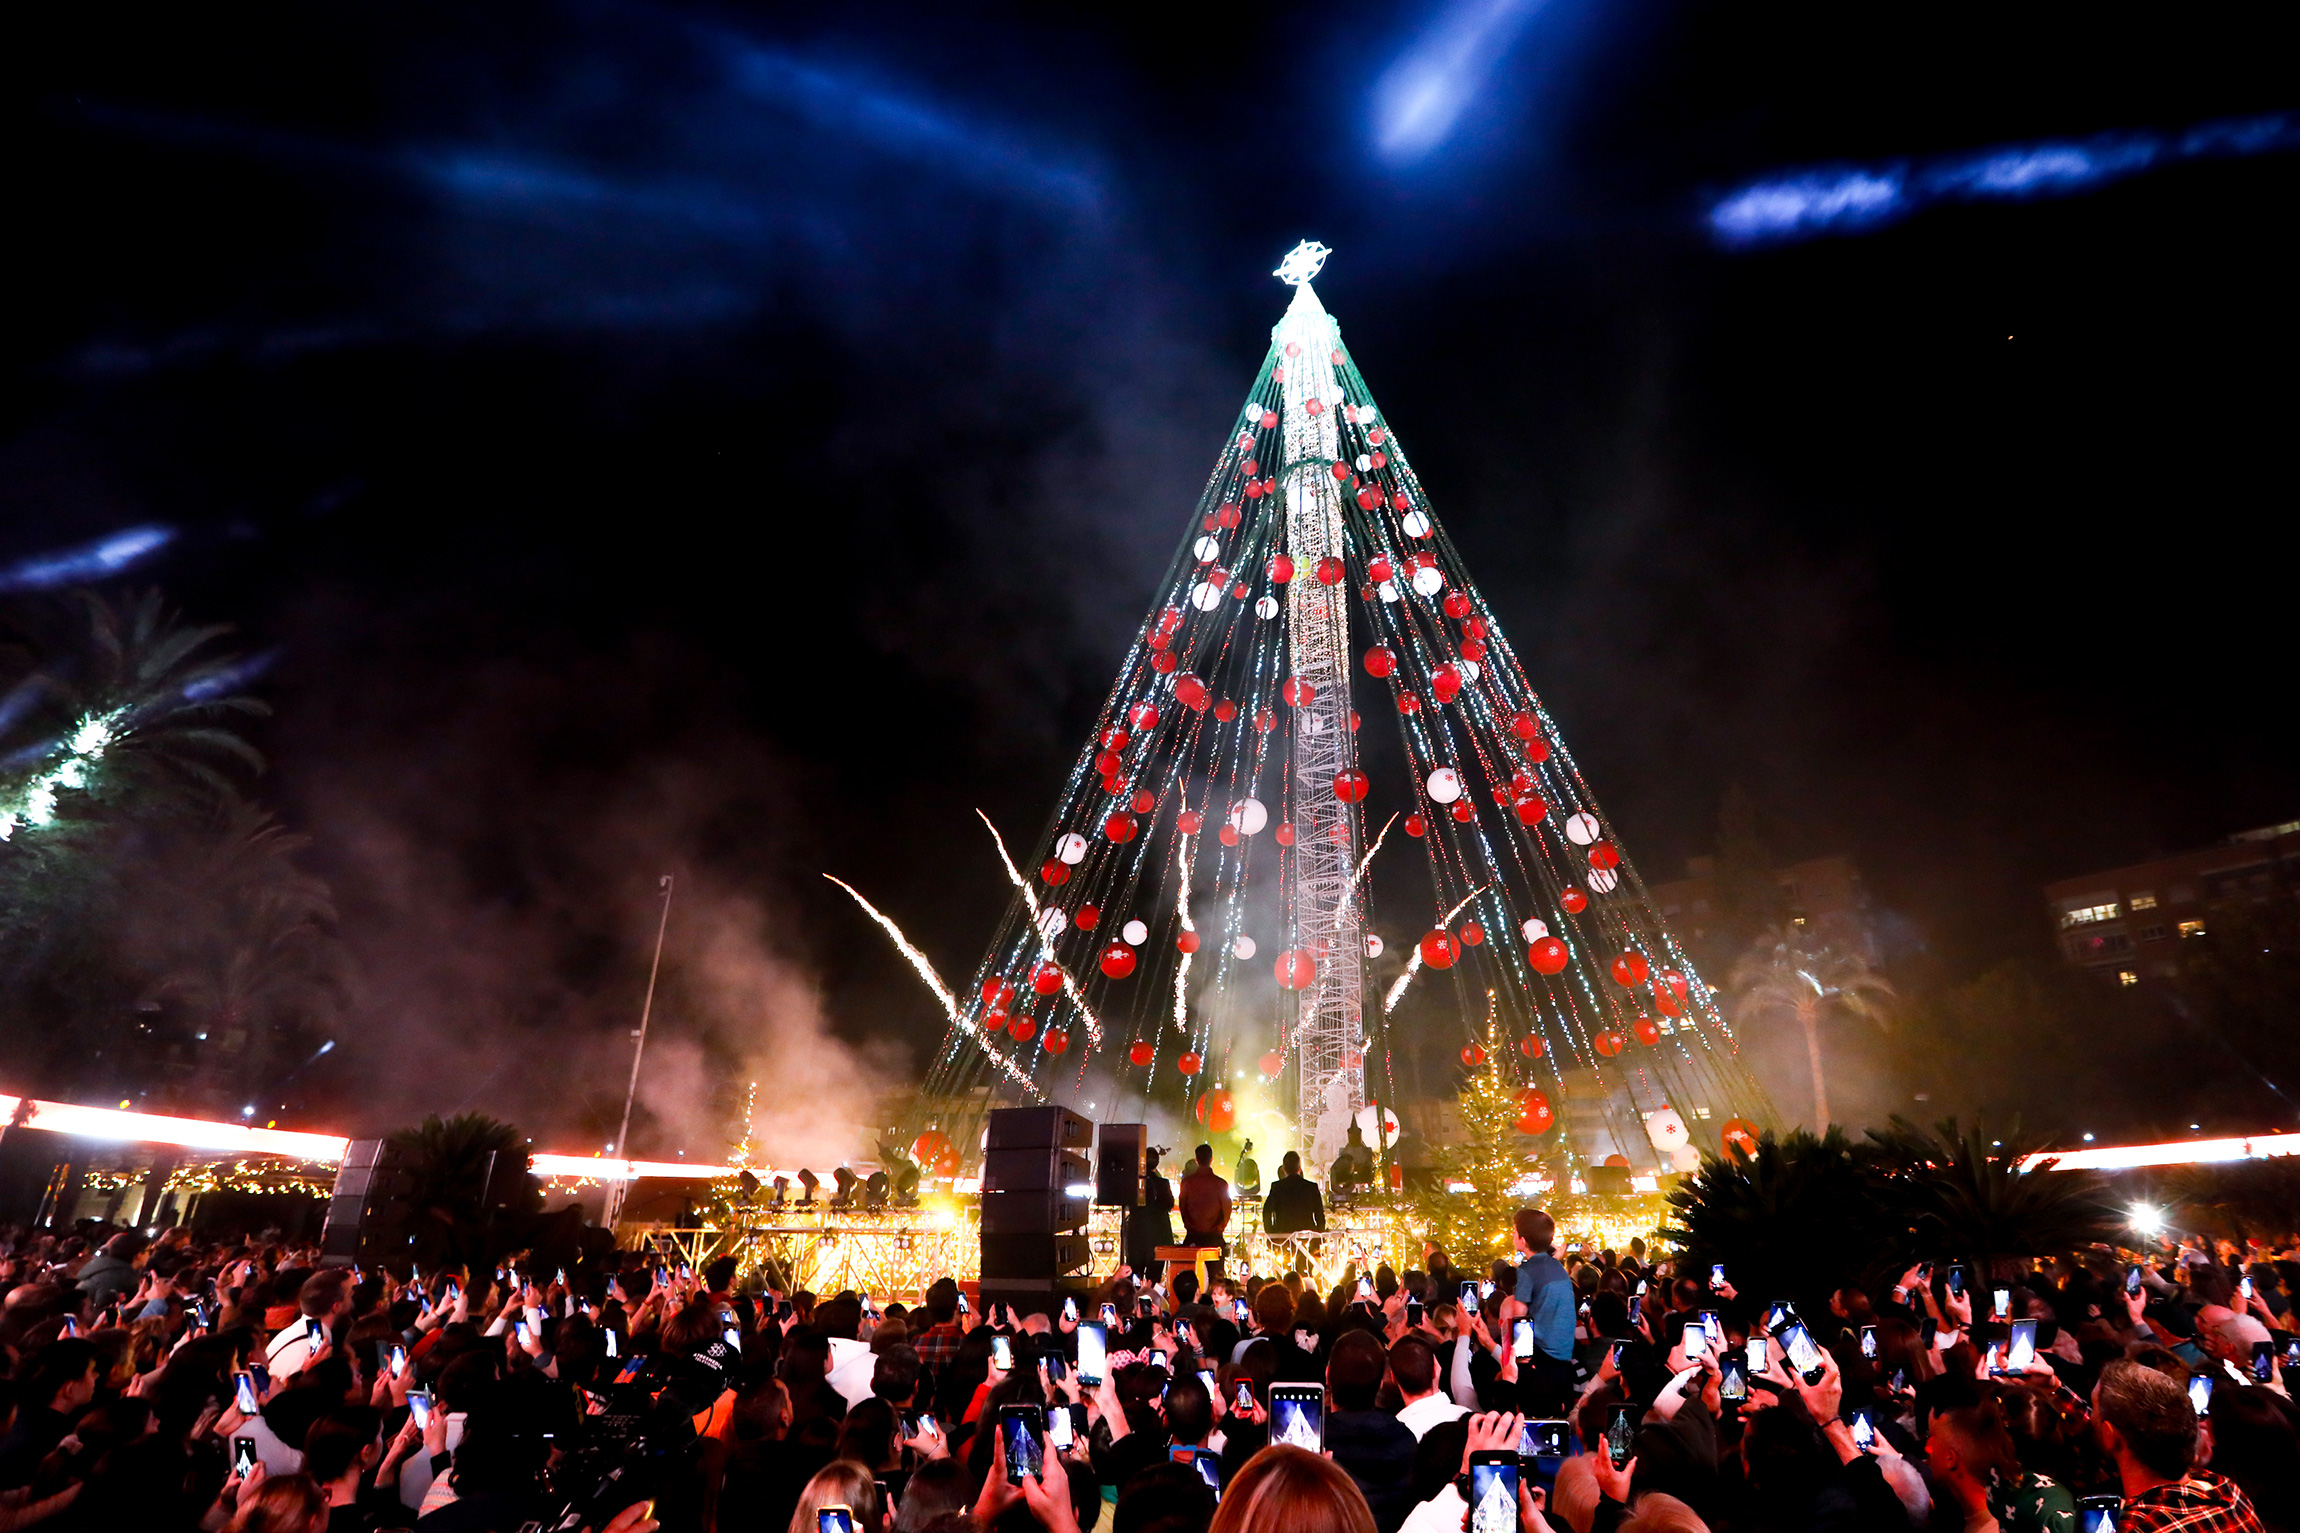 Площадь Сиркулар в городе Мурсия, Испания. Сооружение в форме рождественской ели состоит из 750 тыс. светодиодных ламп со сверхнизким потреблением энергии